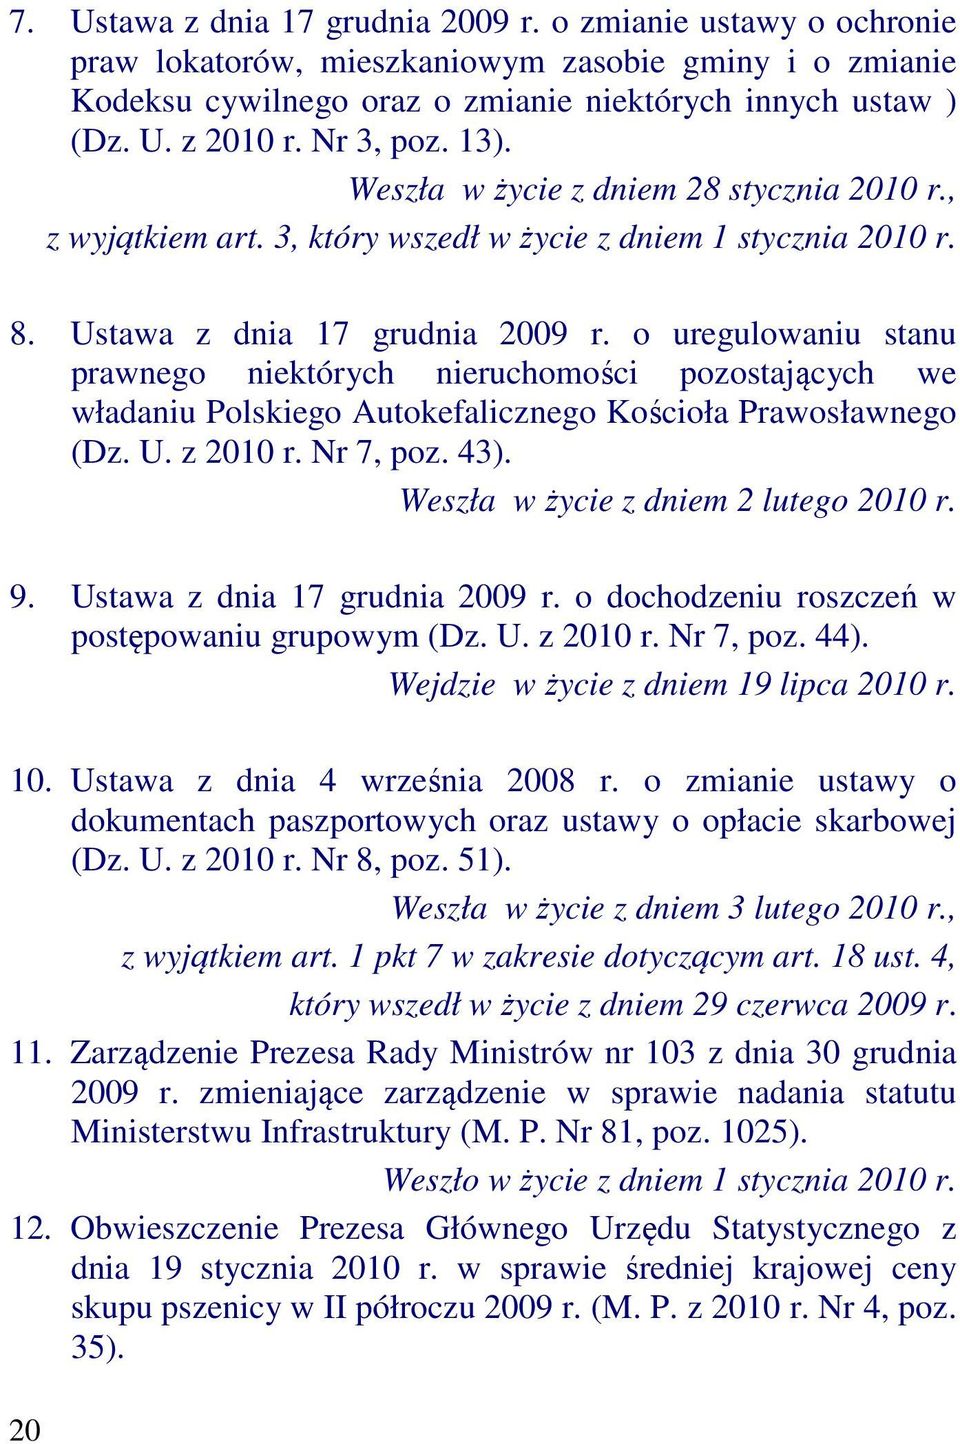 o uregulowaniu stanu prawnego niektórych nieruchomości pozostających we władaniu Polskiego Autokefalicznego Kościoła Prawosławnego (Dz. U. z 2010 r. Nr 7, poz. 43).